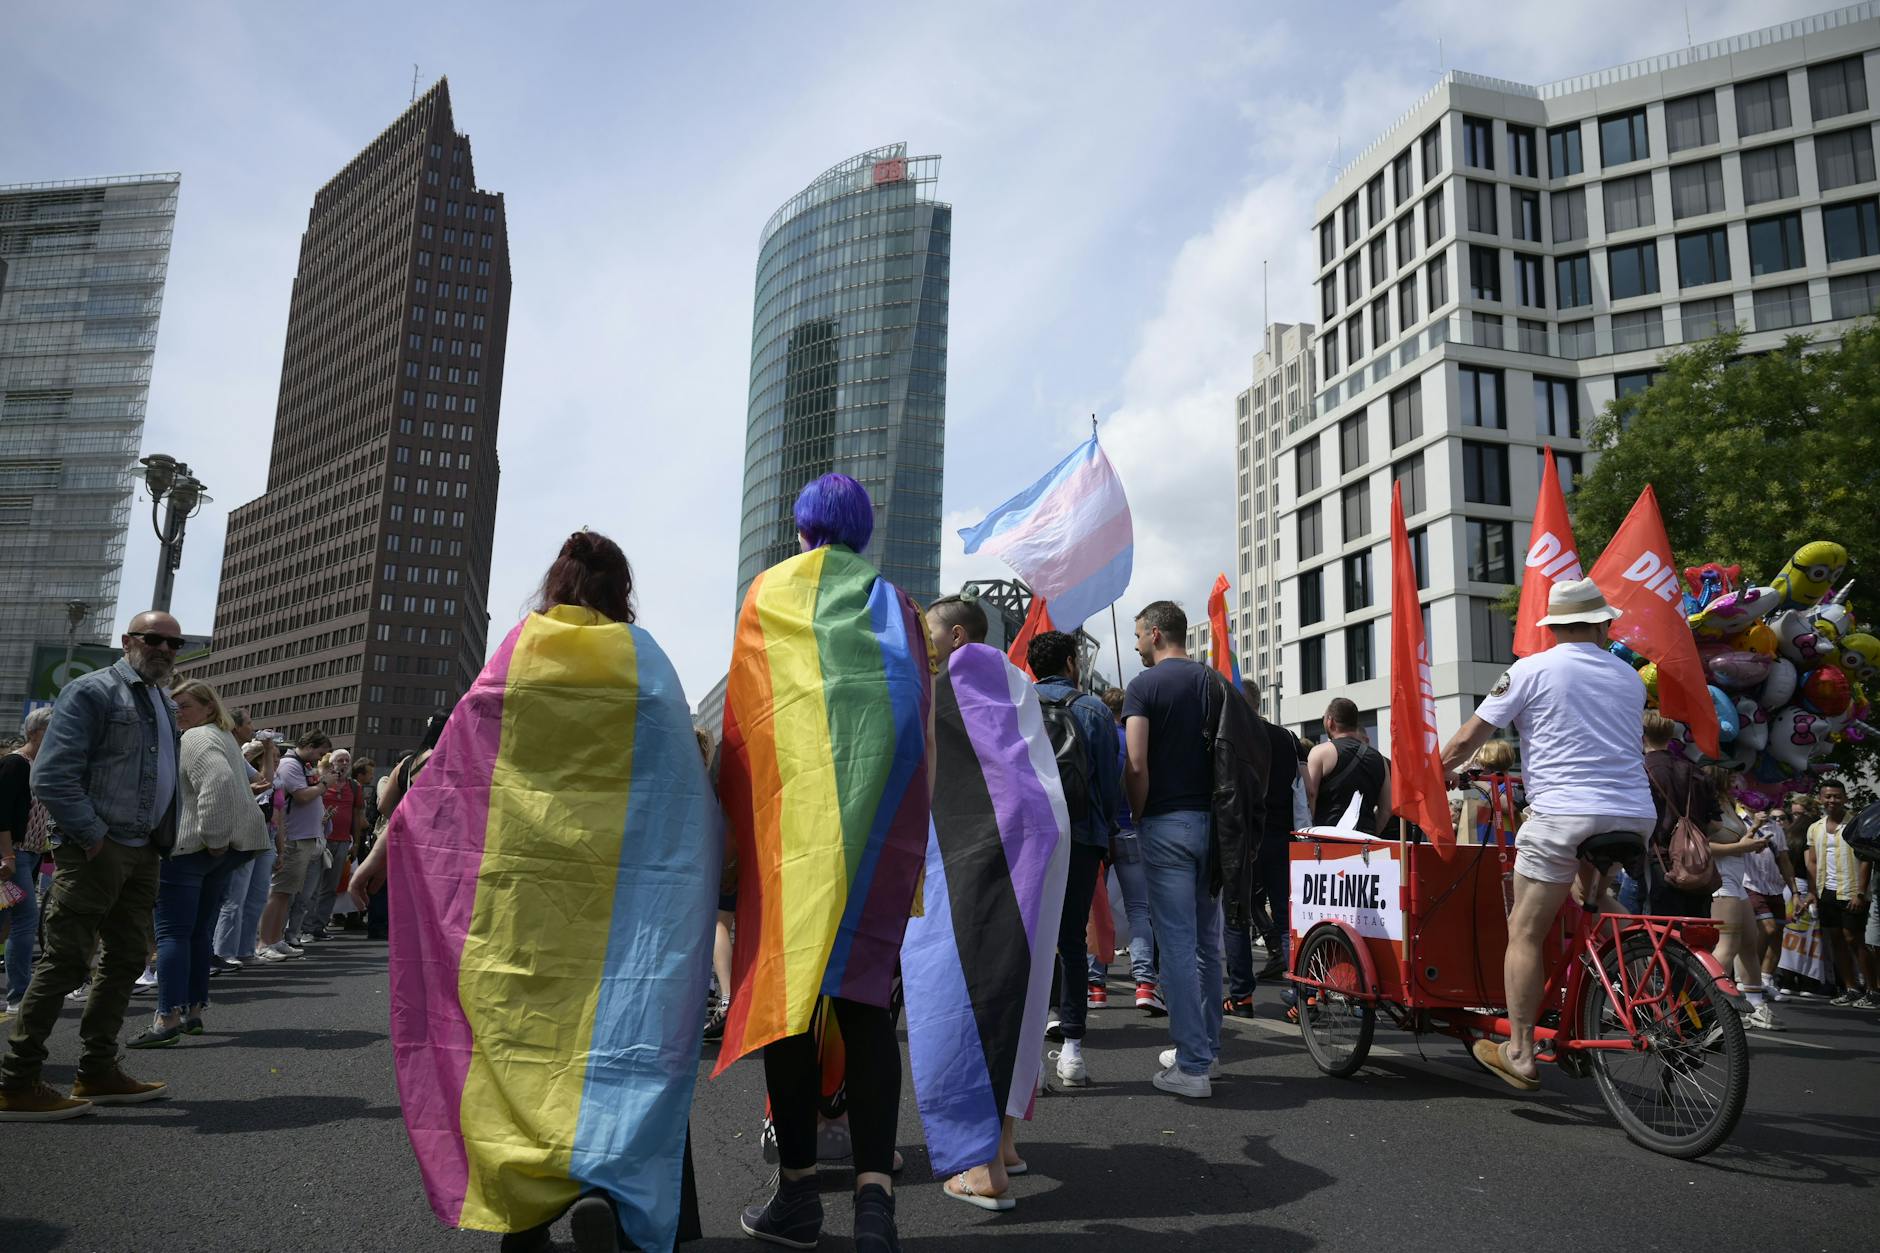 Teilnehmer des CSD-Demonstrationszuges am Potsdamer Platz mit Pansexueller Flagge, Regenbogenflagge und Genderfluid-Flagge.